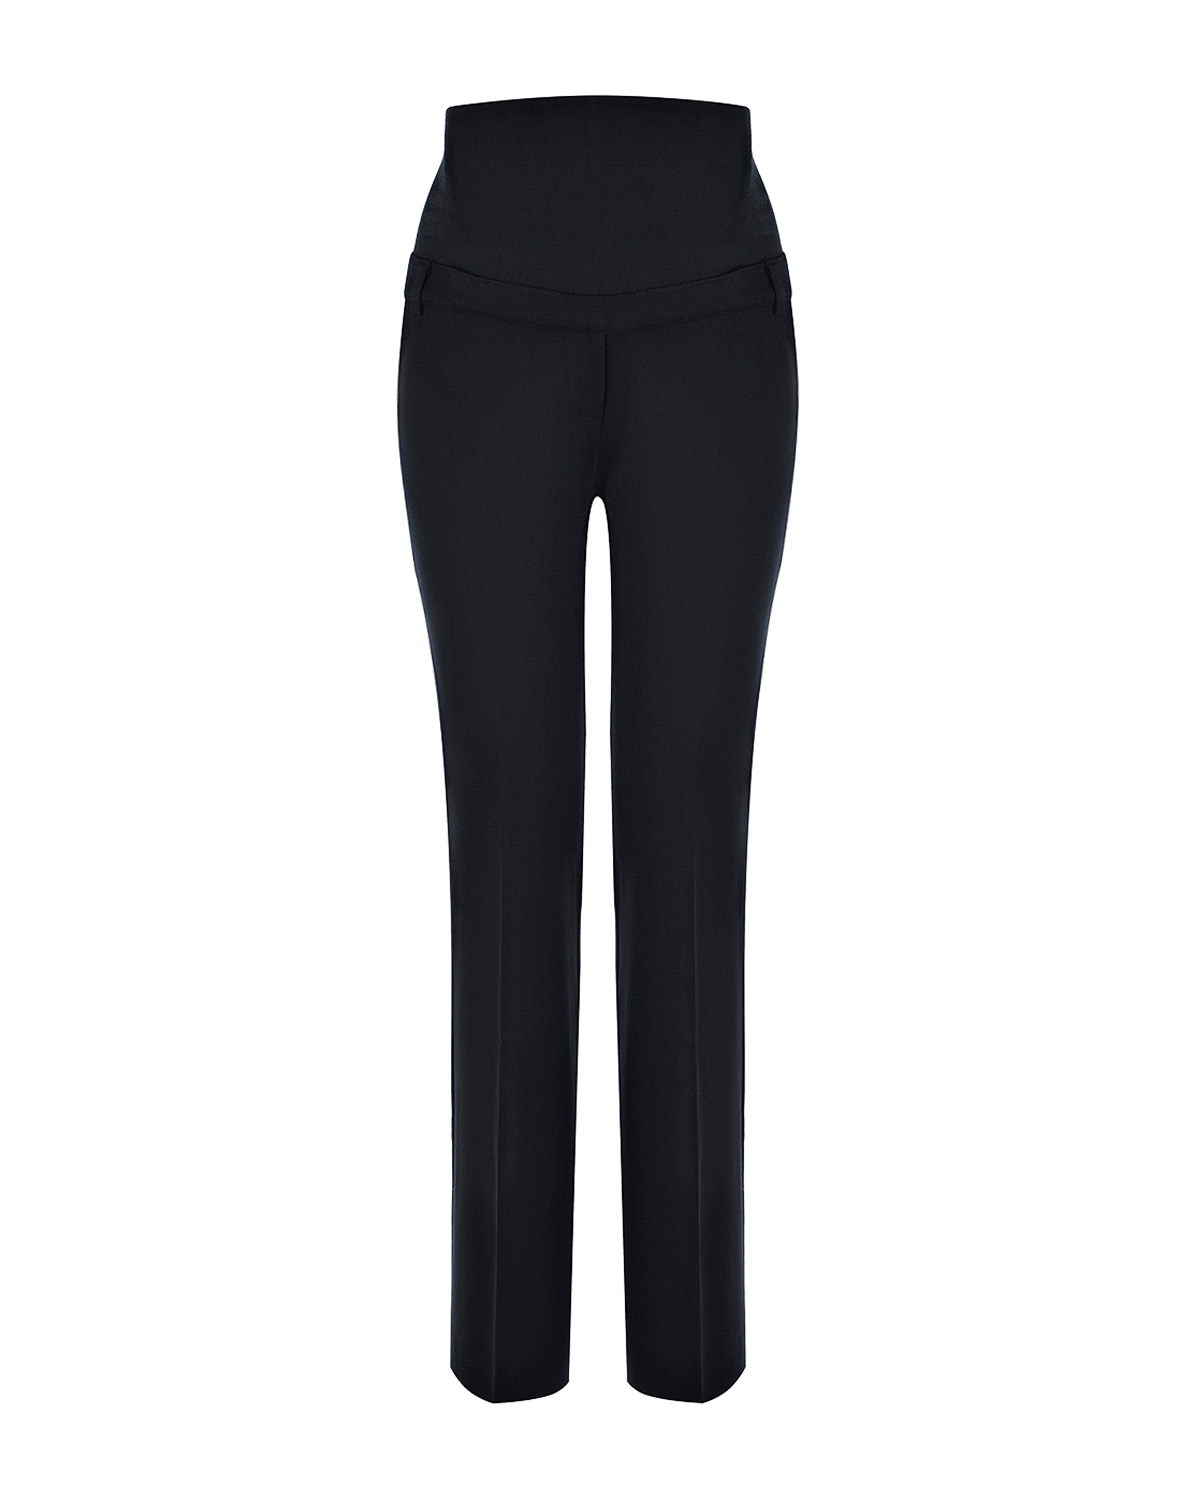 Черные трикотажные брюки Comfy LEO Pietro Brunelli, размер 38, цвет черный